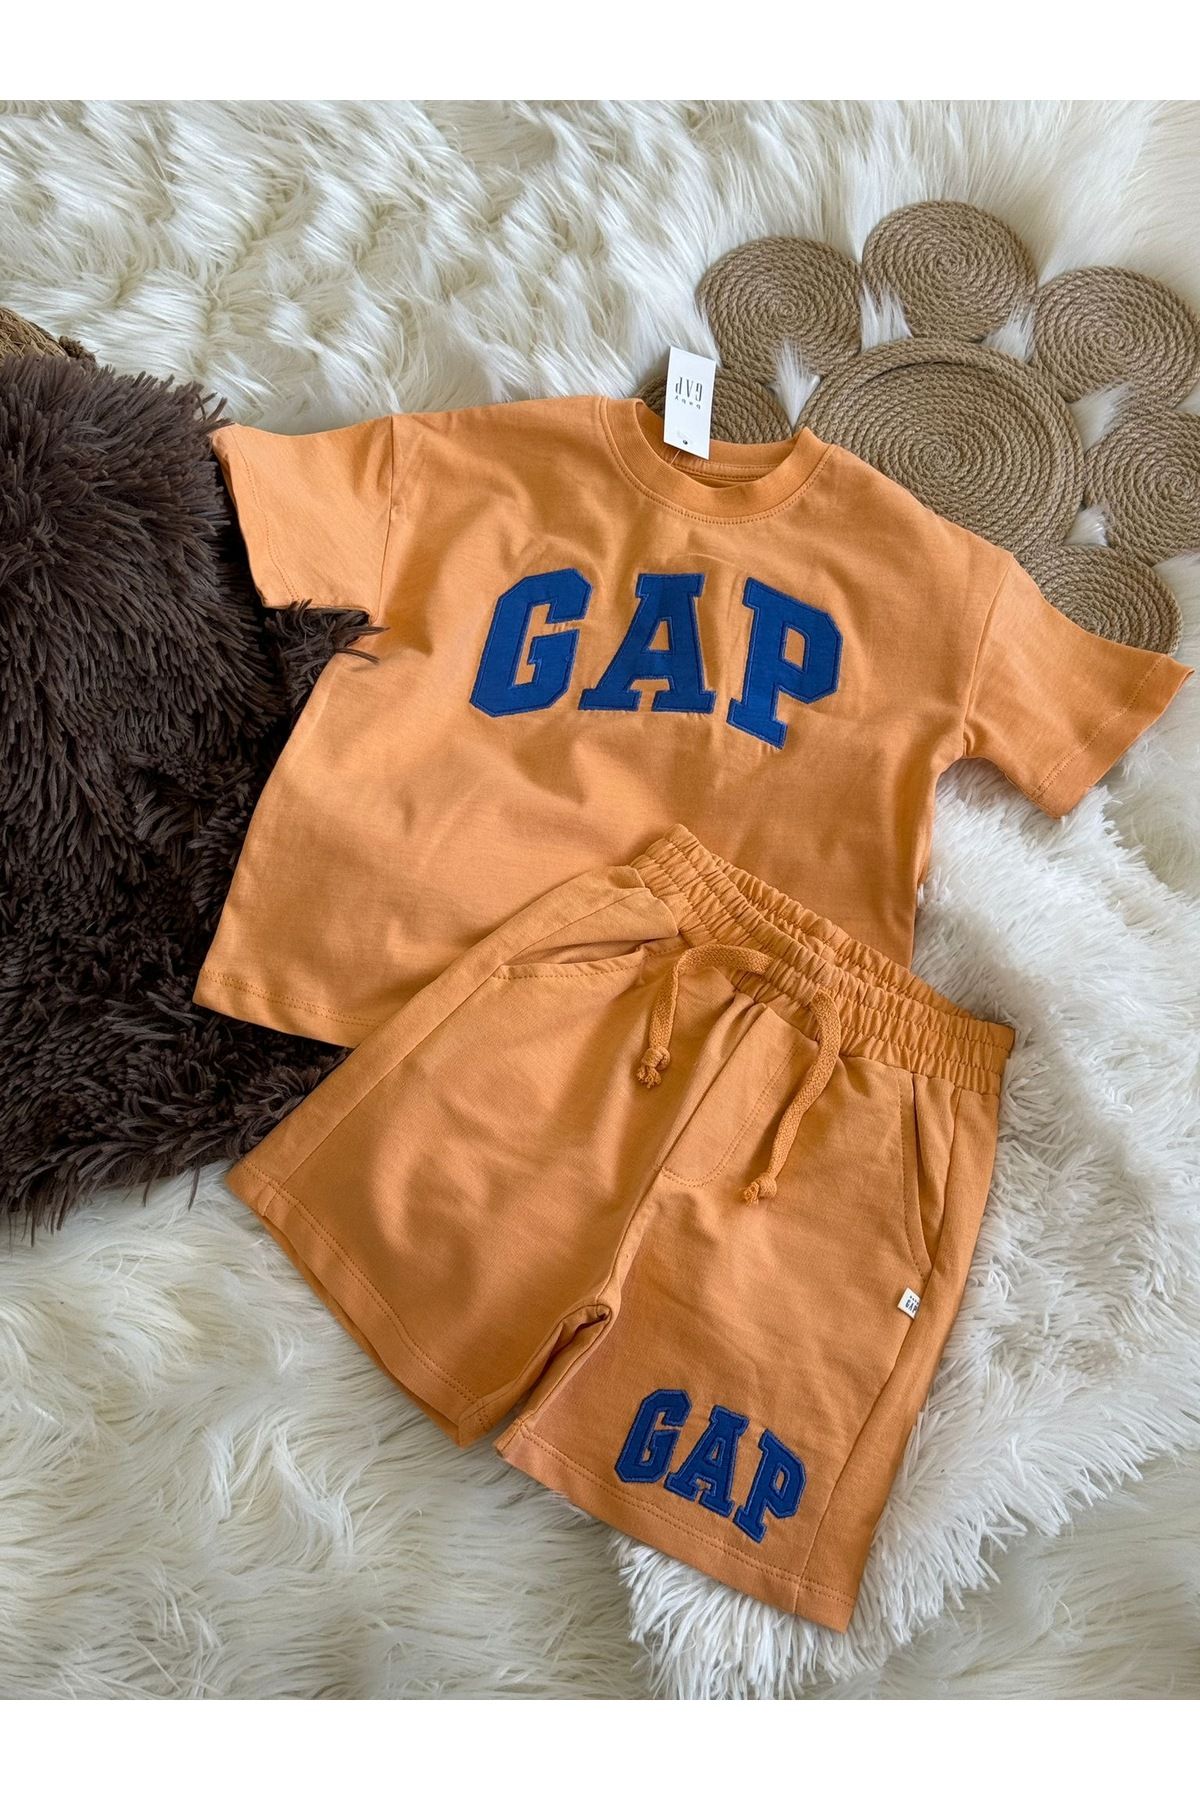 GAP Unisex Çocuk Yazlık Takım / Gap Baby Çocuk Yazlık Takım / Gap Baby Premium Kalite Şortlu Çocuk Takım